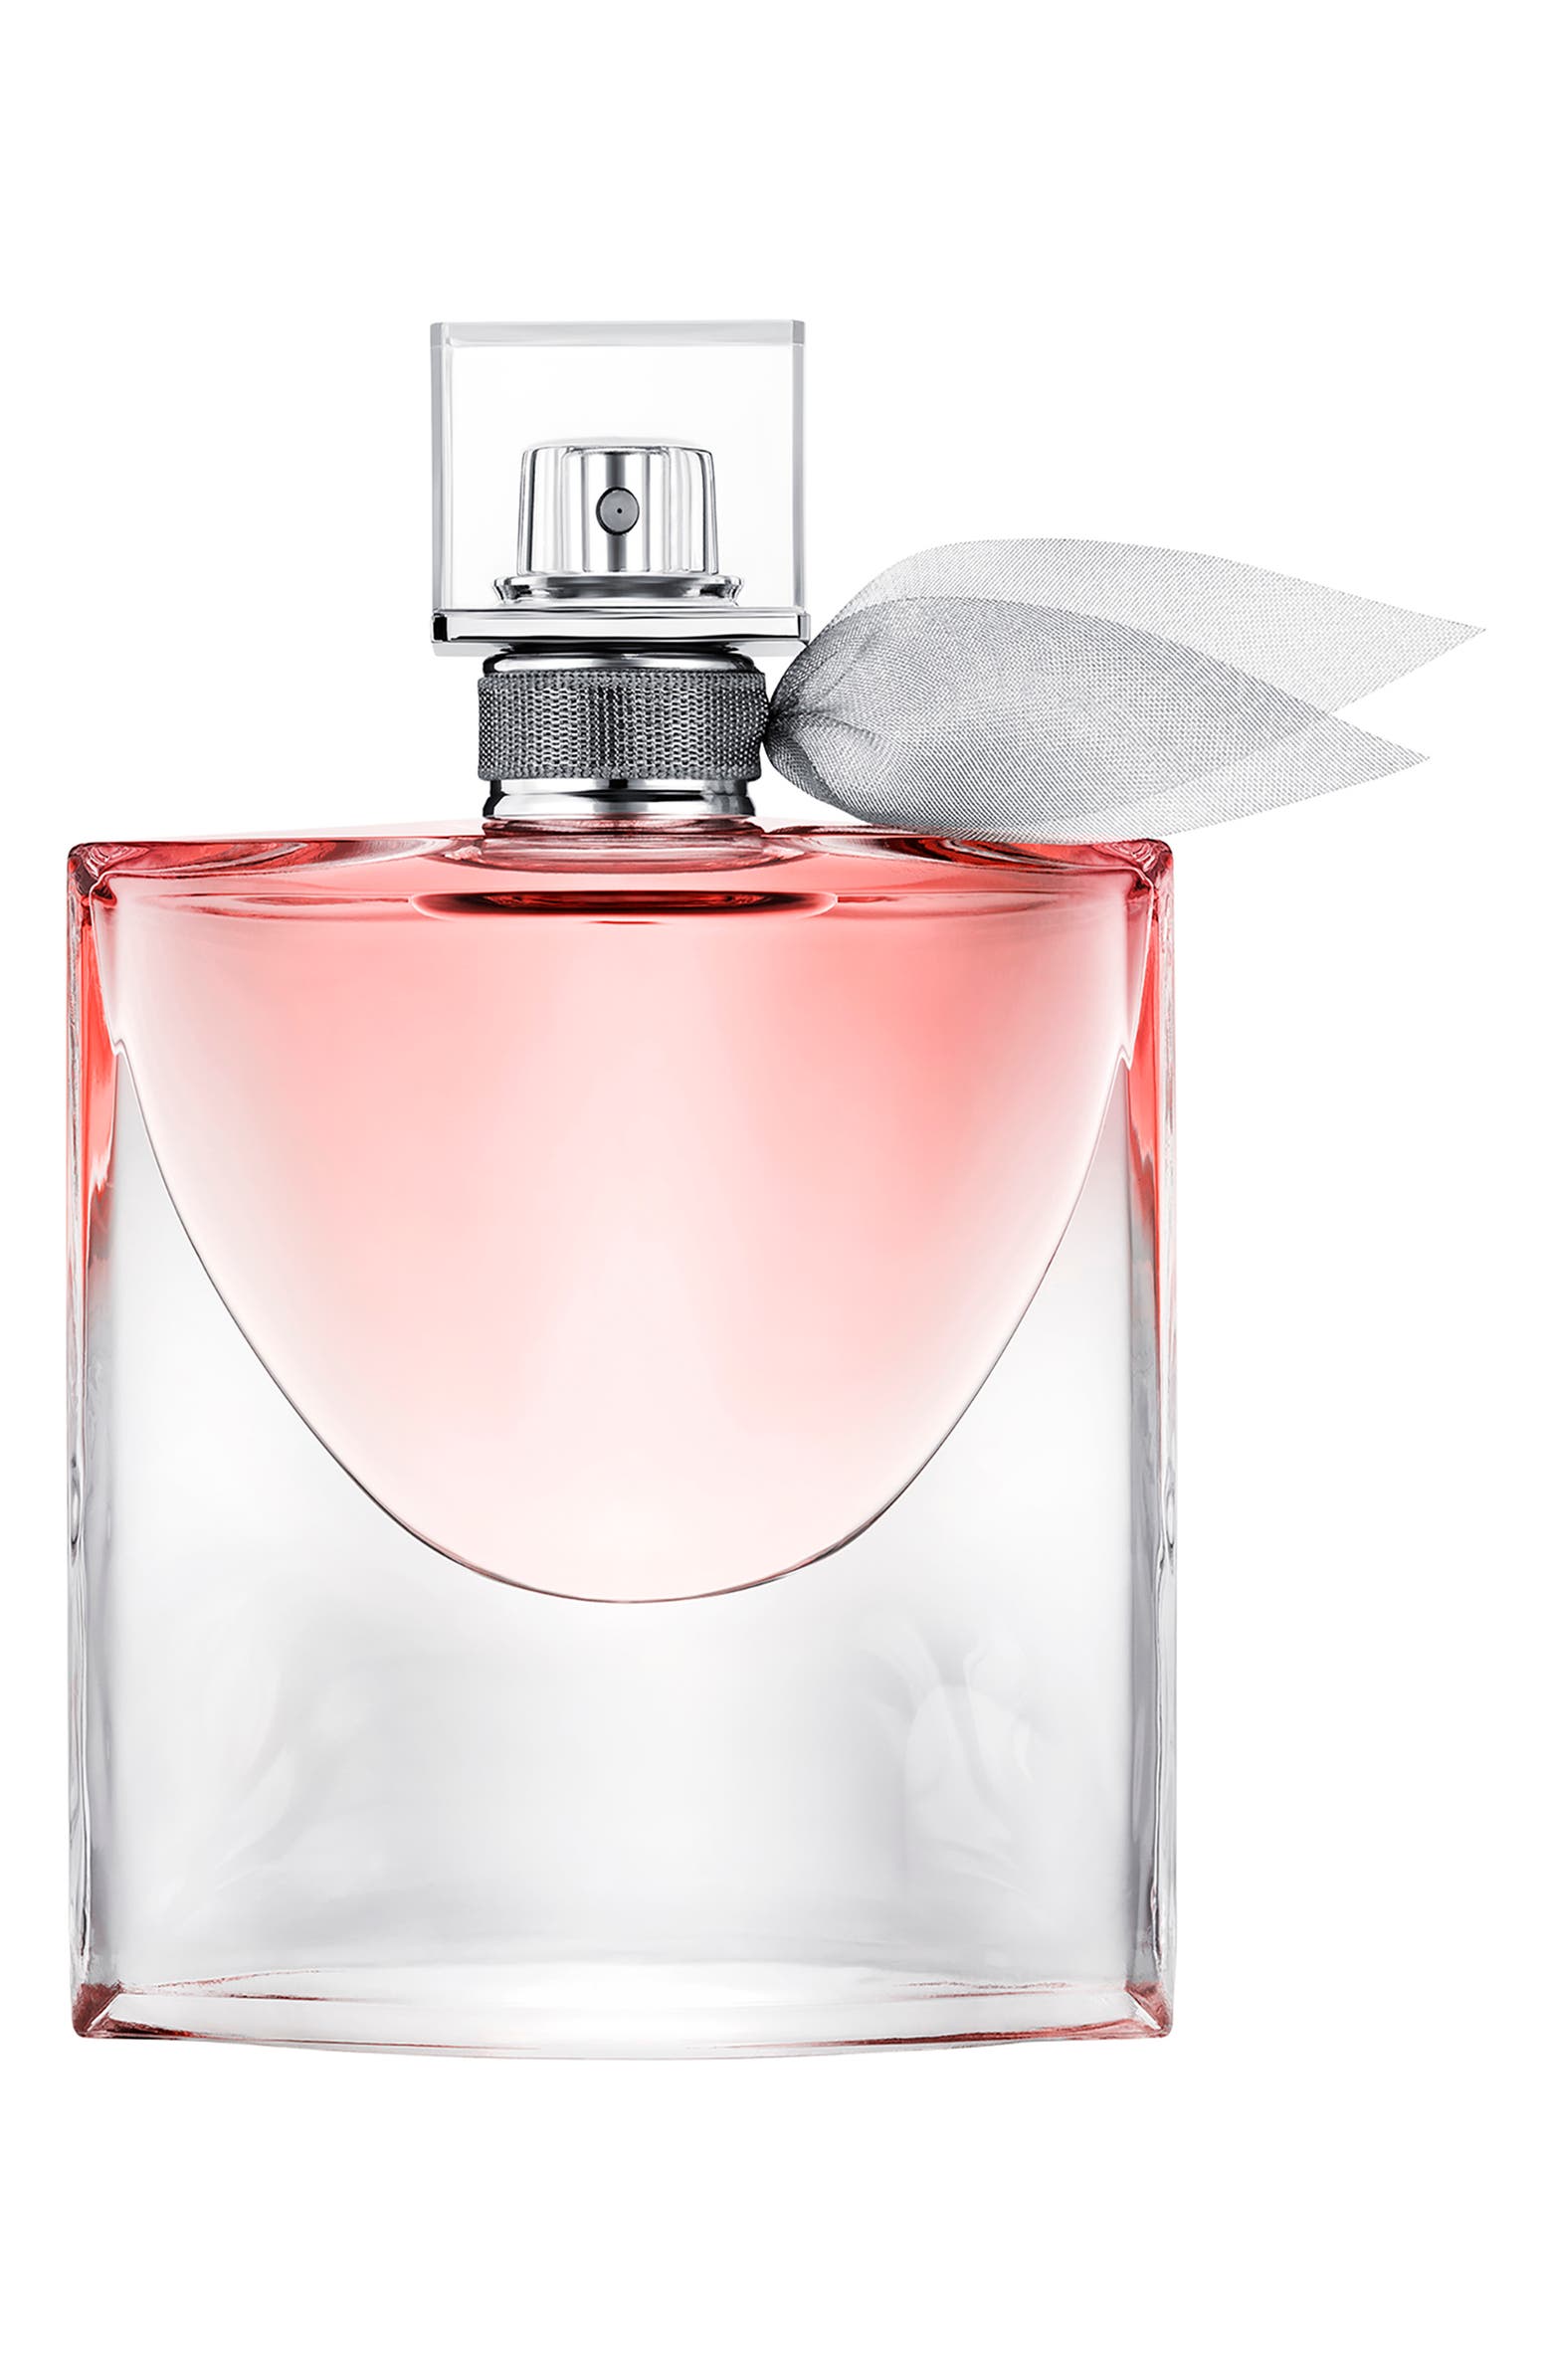 Lancome La Vie est belle perfume with Patchouli